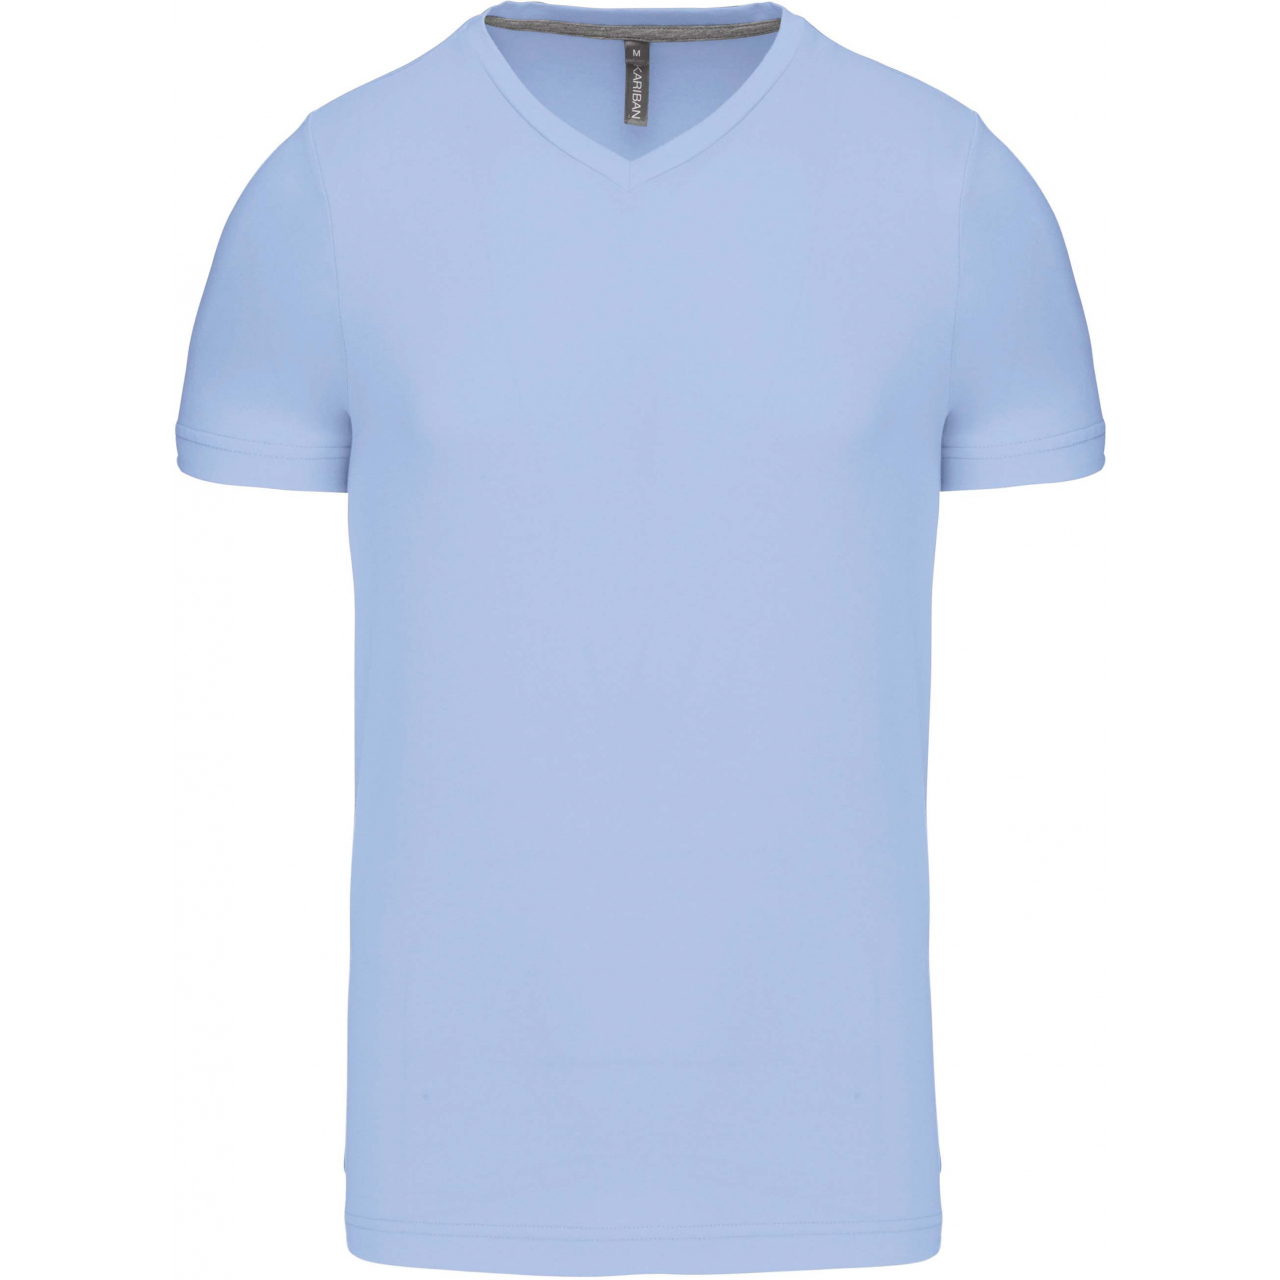 Pánské tričko Kariban krátký rukáv V-neck - světle modré, XXL